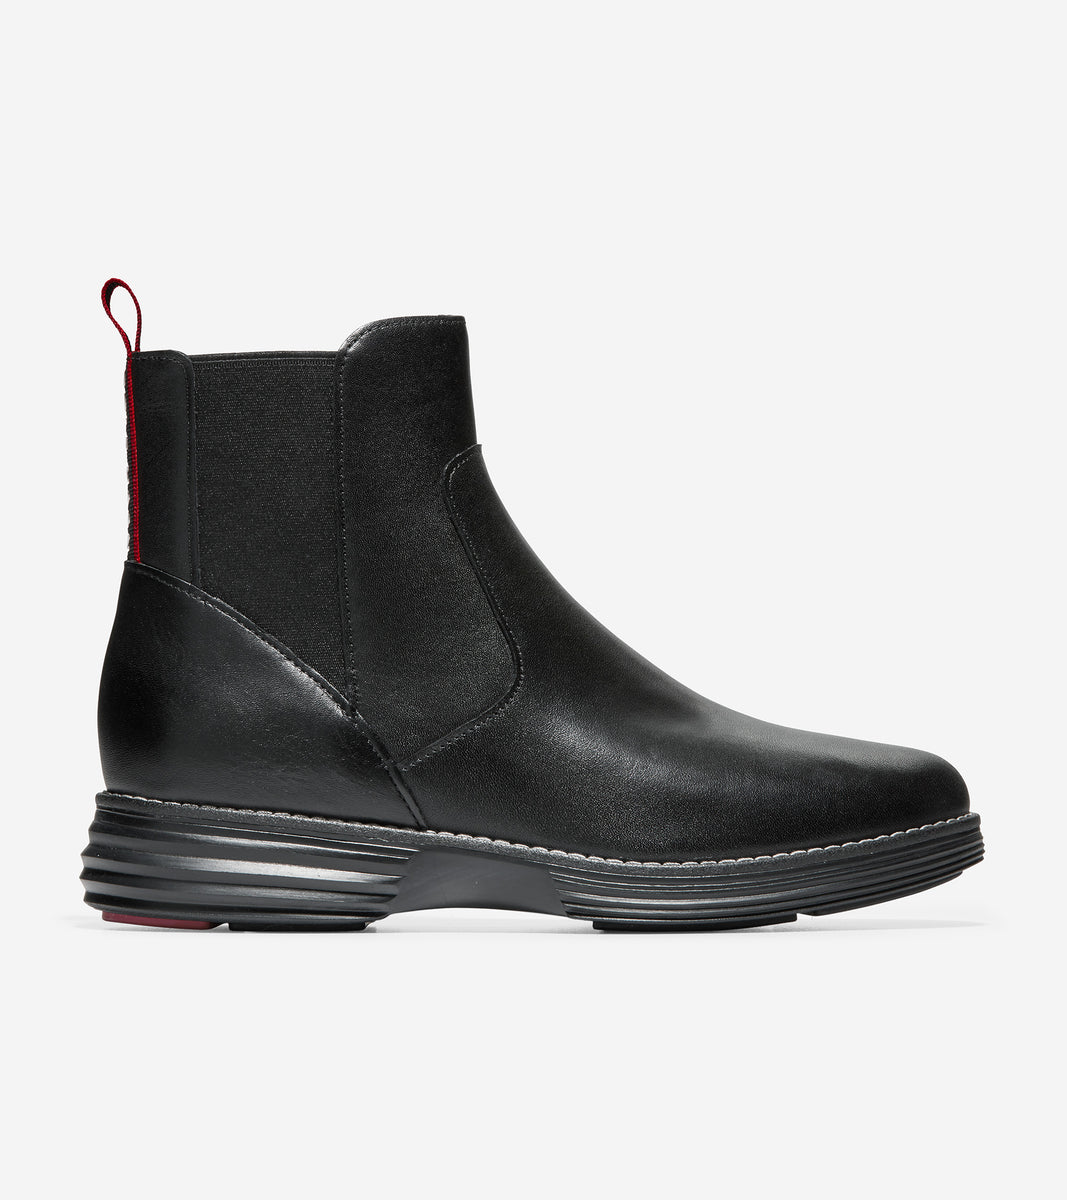 ColeHaan-ØriginalGrand Chelsea Boot-w20361-Black Leather